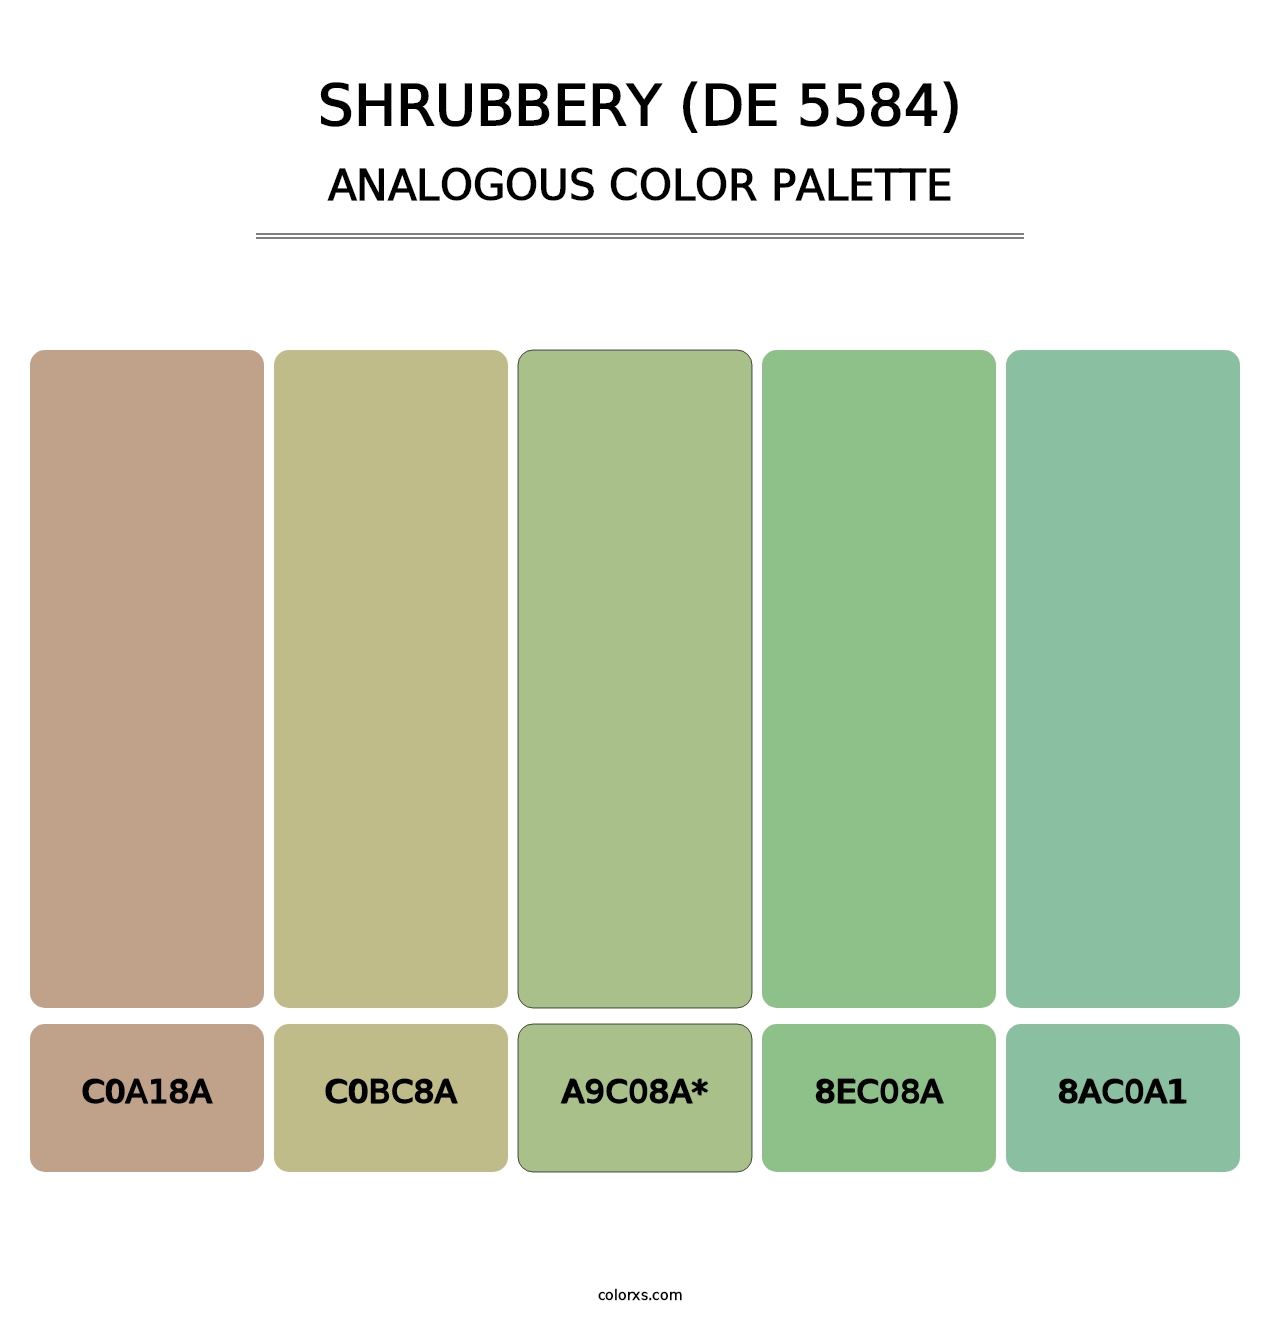 Shrubbery (DE 5584) - Analogous Color Palette